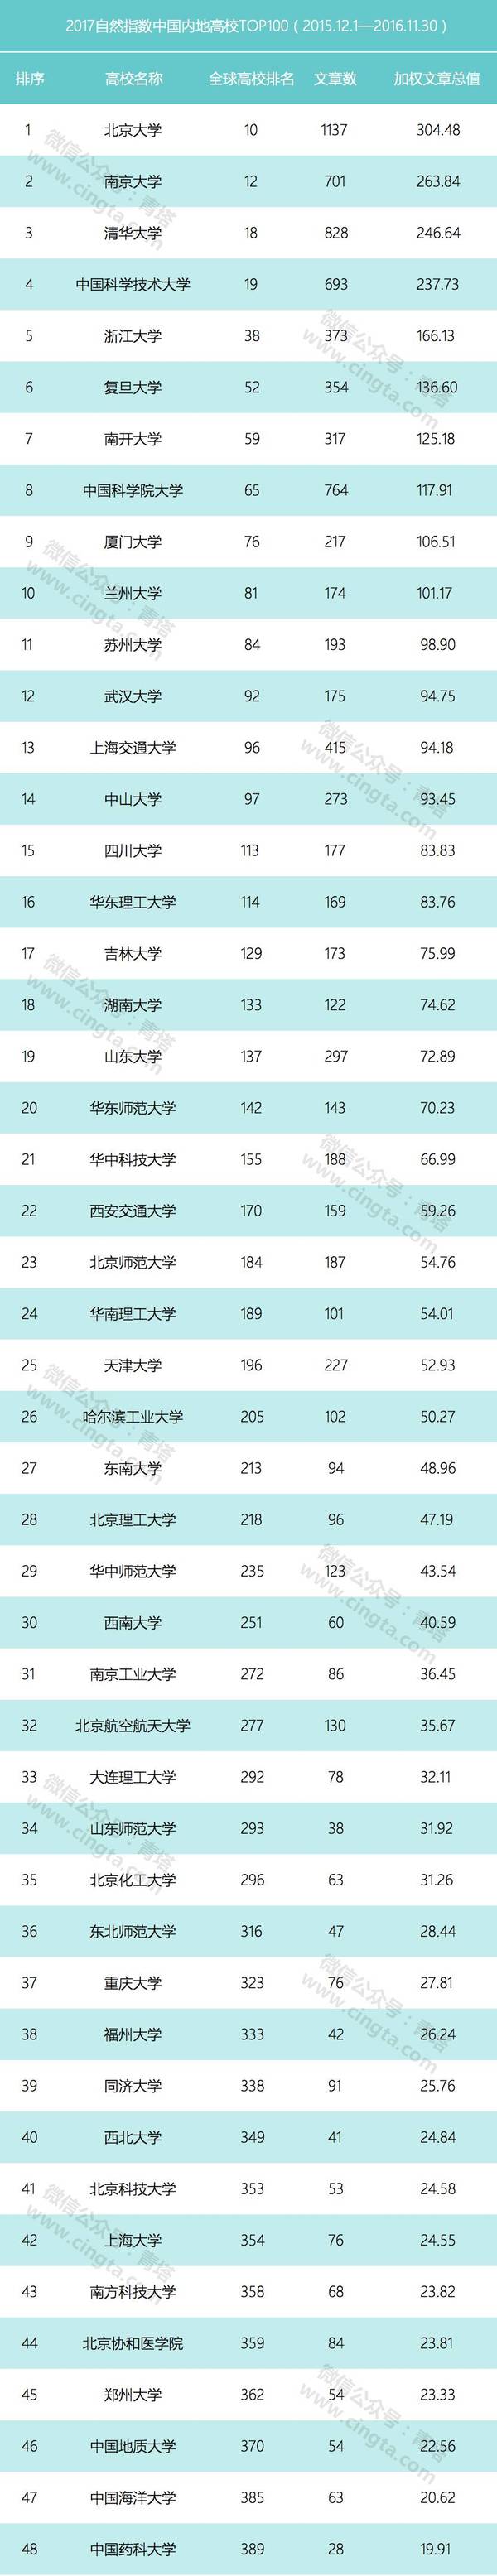 2017年自然指數發佈 山東5所高校入圍中國內地高校TOP100